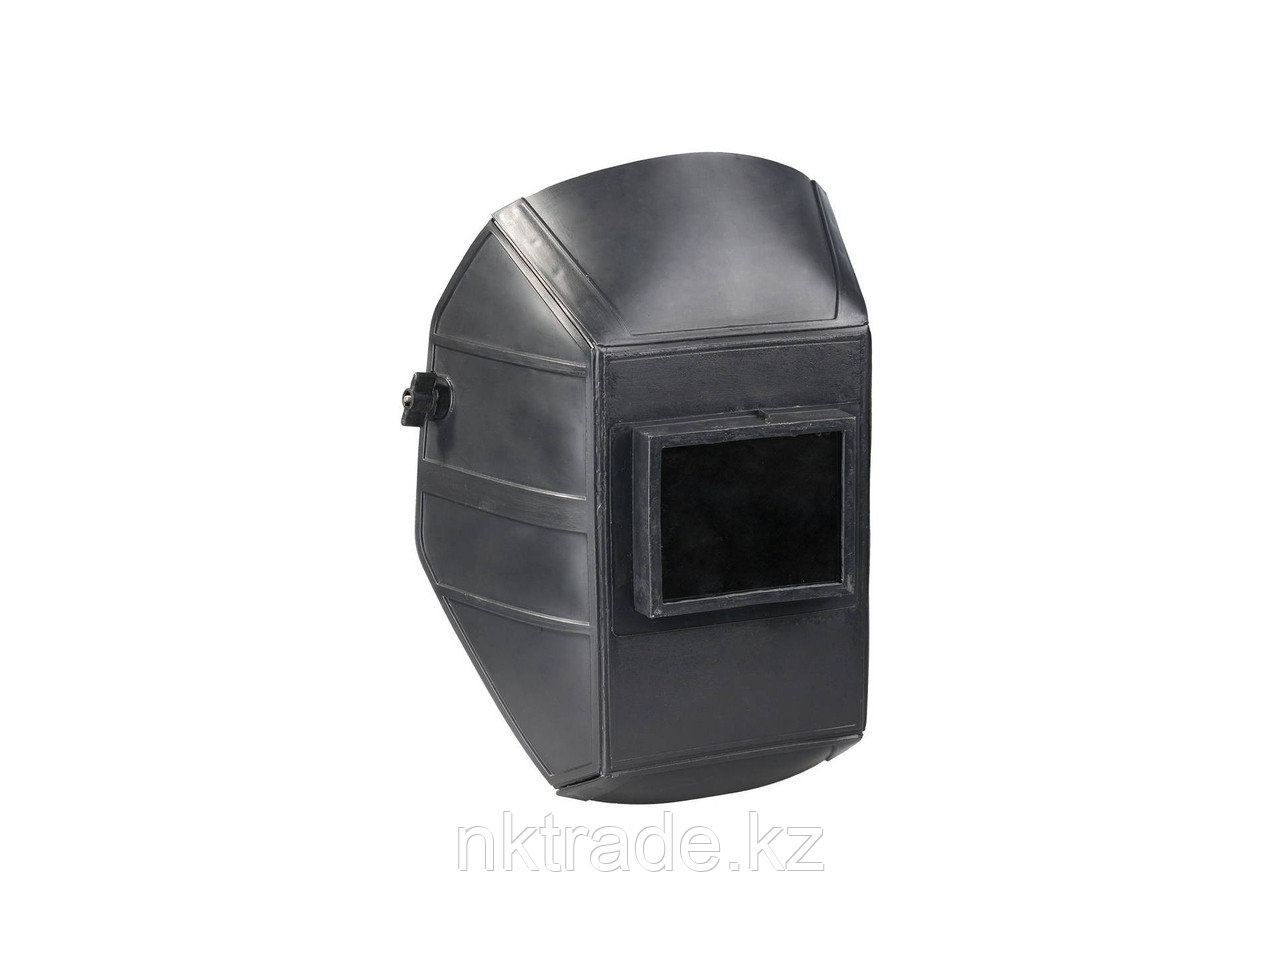 Щиток защитный лицевой для электросварщиков "НН-С-701 У1" модель 04-04, из специального пластика, евростекло,